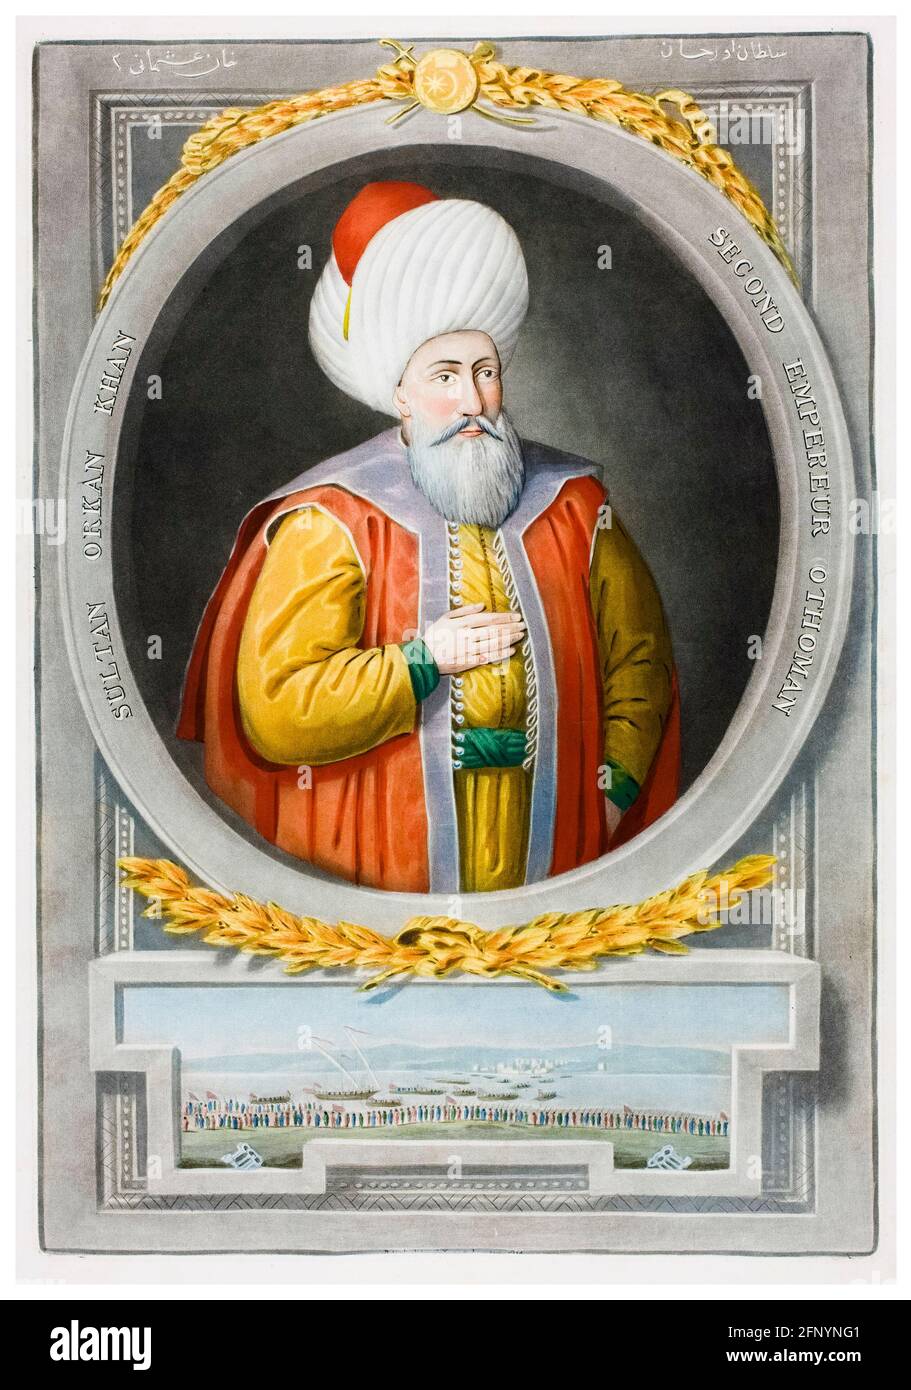 Orhan Ghazi de Turquie (1281-1362), deuxième sultan de l'Empire ottoman (1324-1362), gravure de portraits de John Young, 1815 Banque D'Images